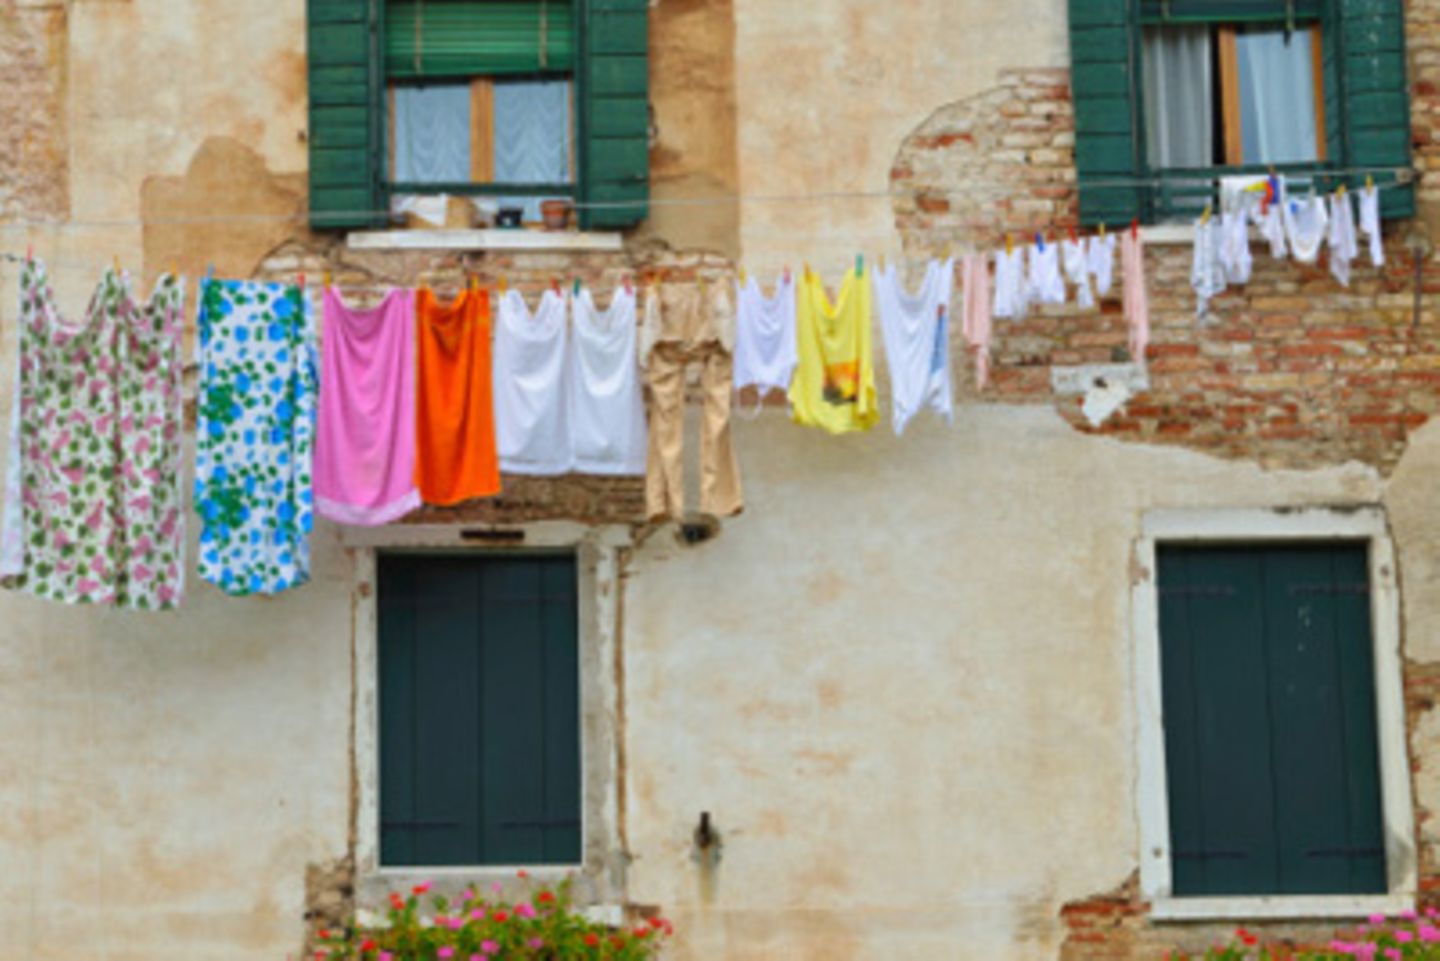 Wäscheleine mit Kleidung vor Hauswand